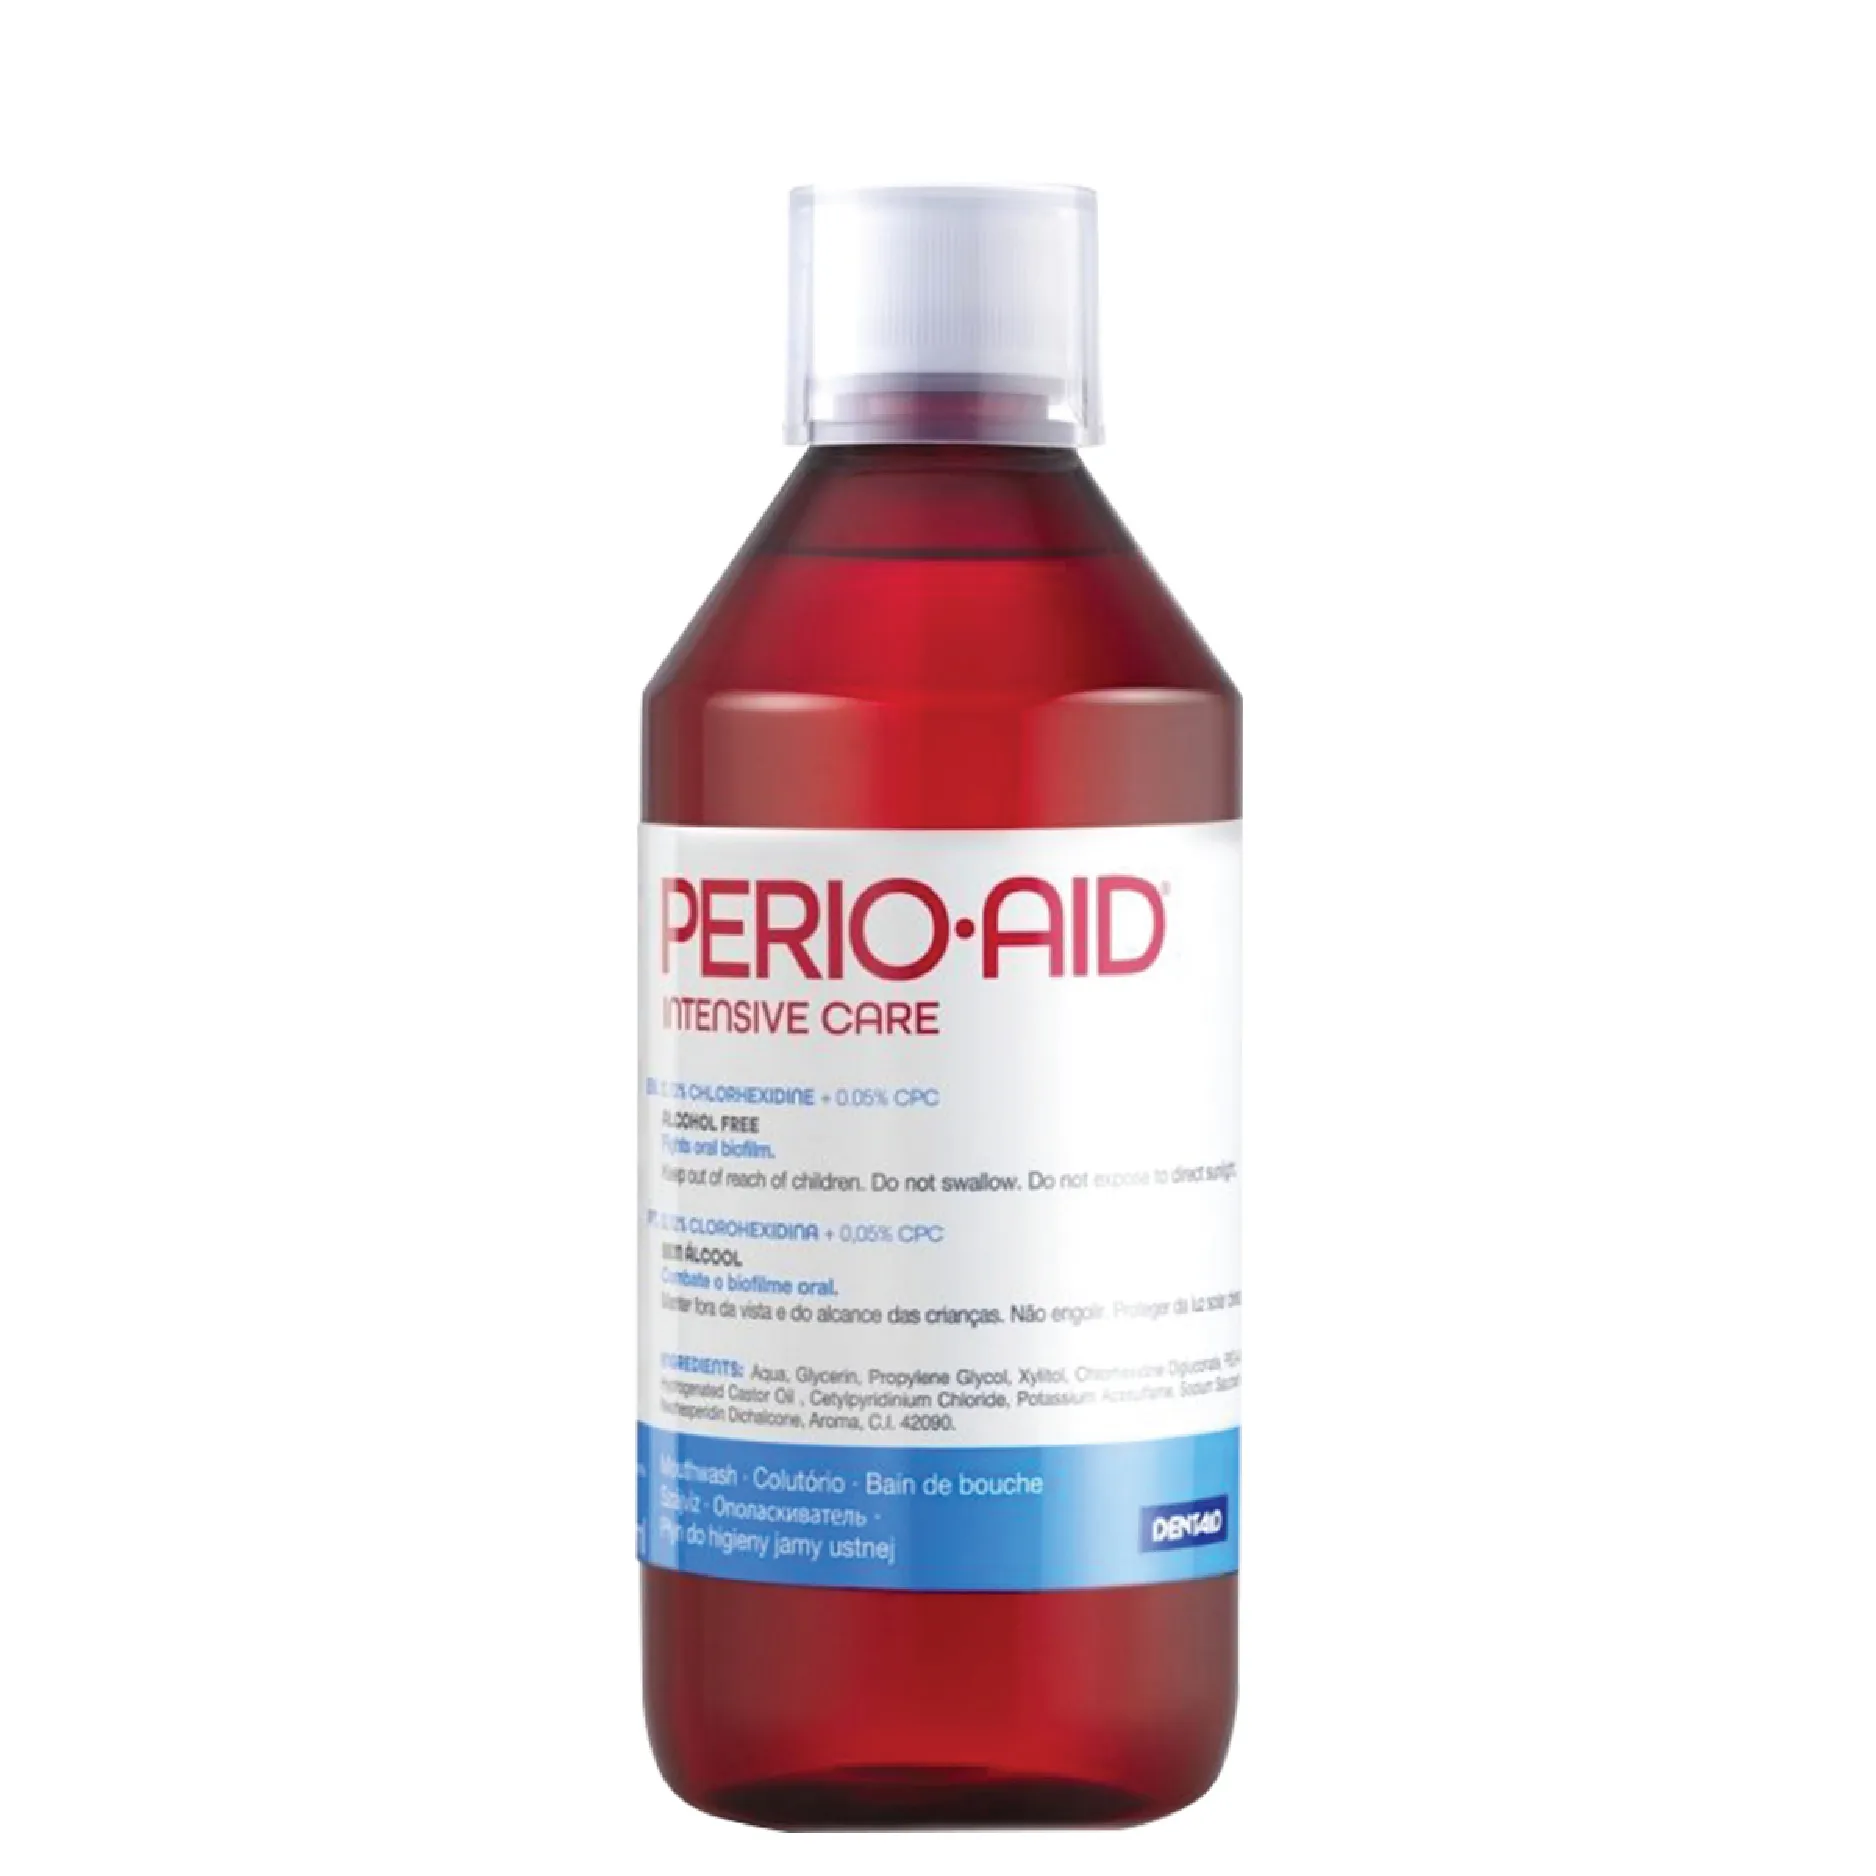 Nước súc miệng Perio-aid Intensive Care là dung dịch kháng khuẩn chuyên biệt, sử dụng cho trước hoặc sau phẫu thuật răng miệng